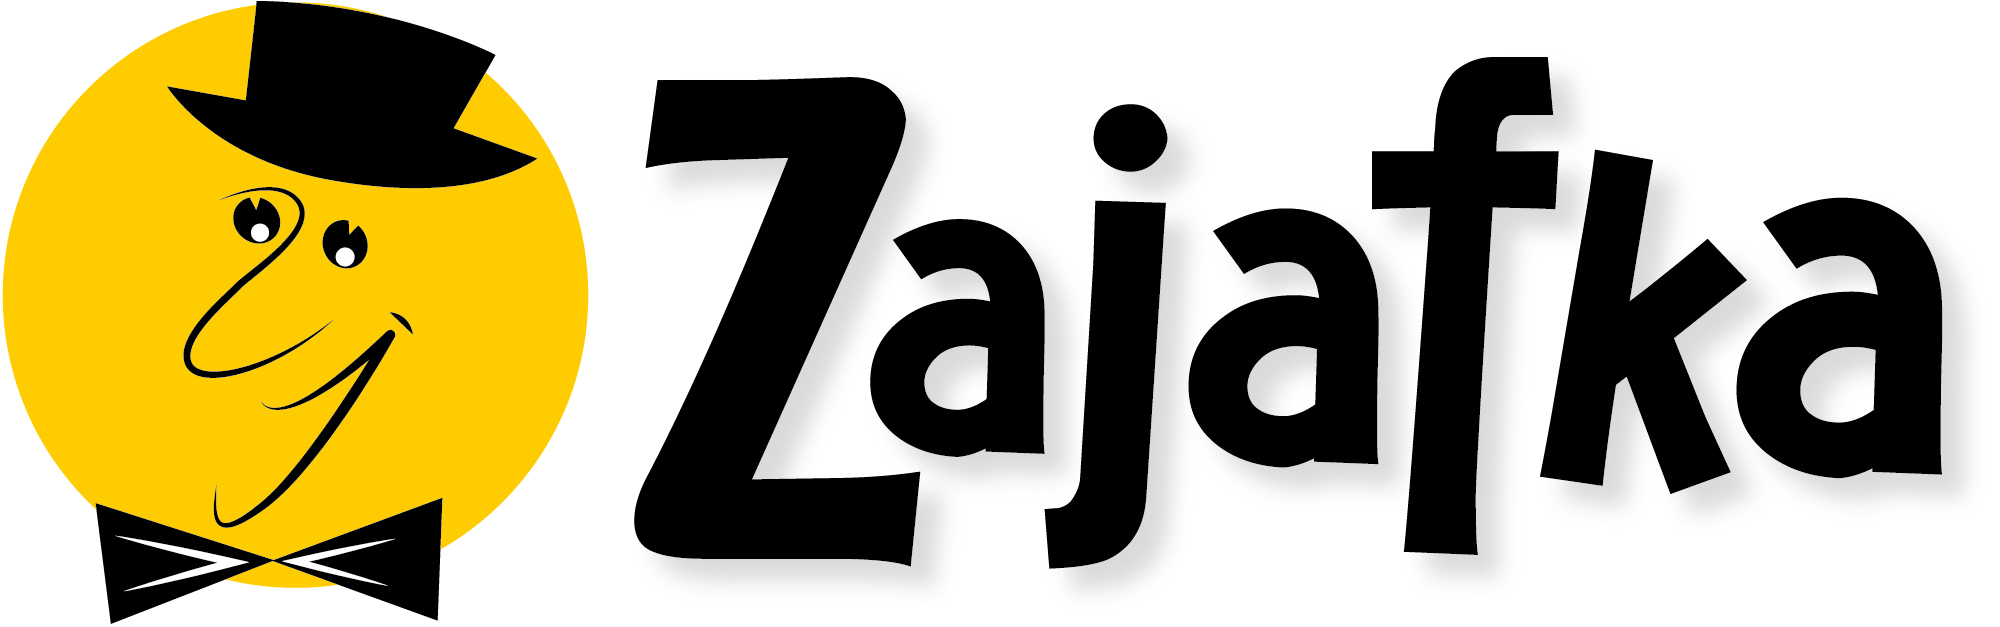 zajafka_logo